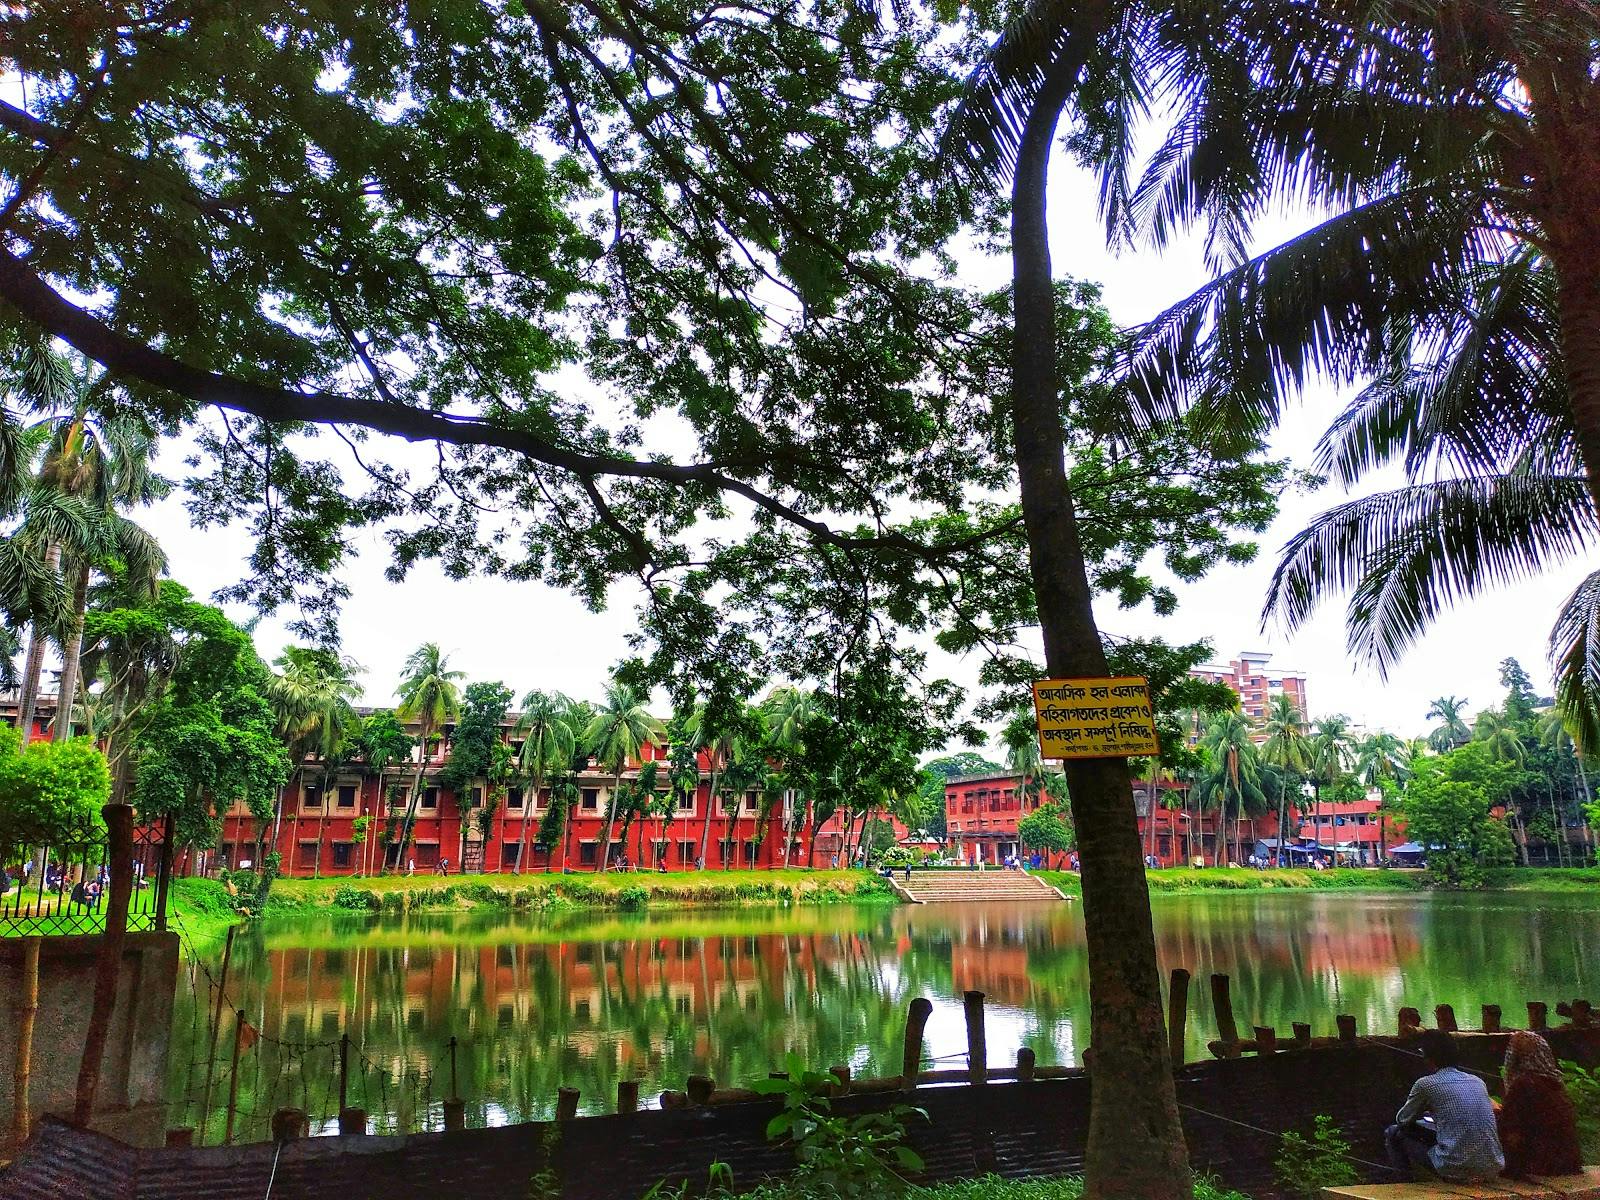 Image - University of Dhaka